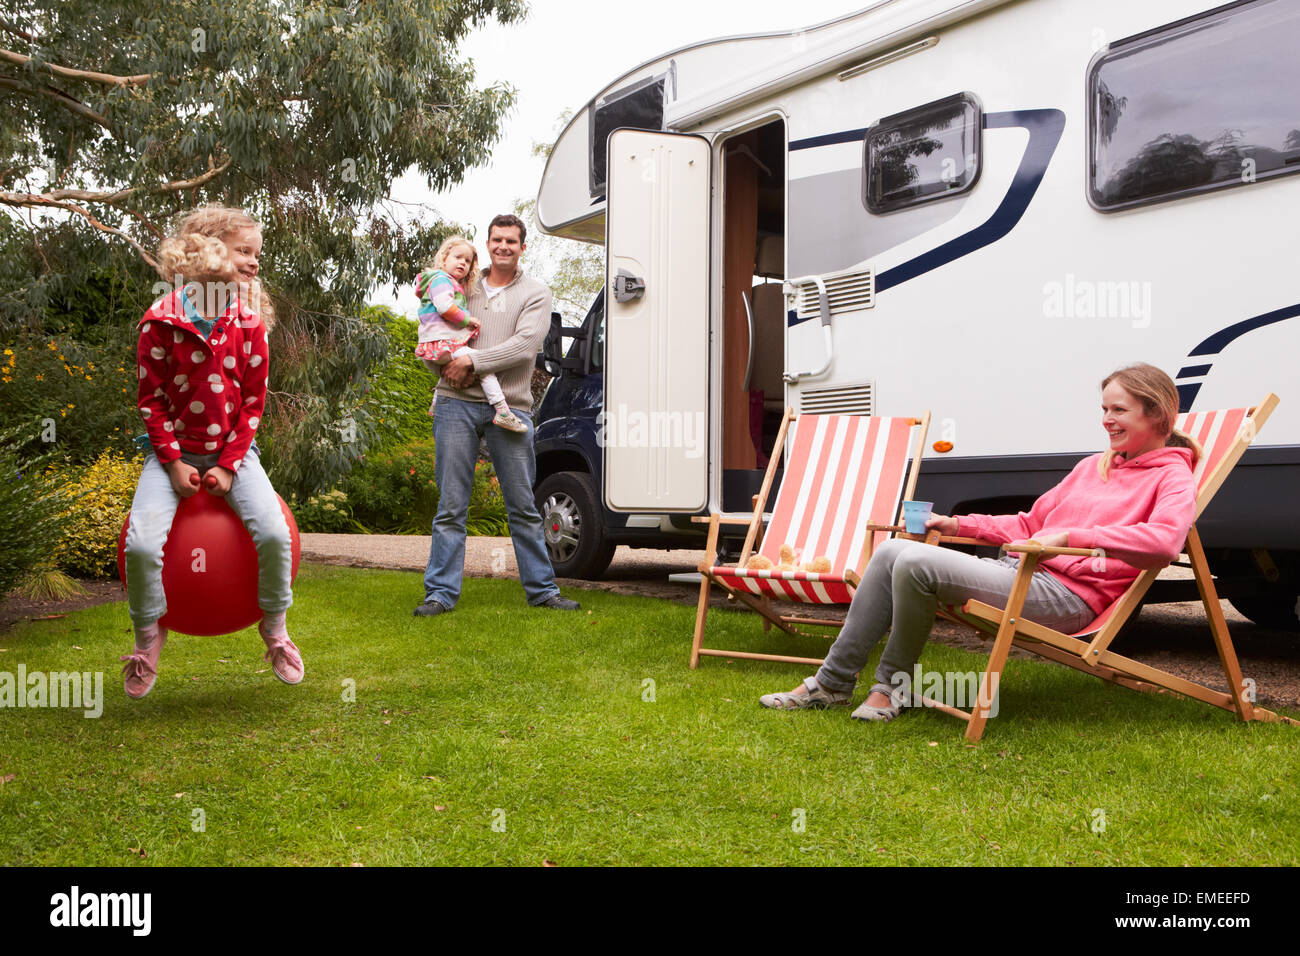 Godendo della famiglia campeggio vacanza in camper Foto Stock